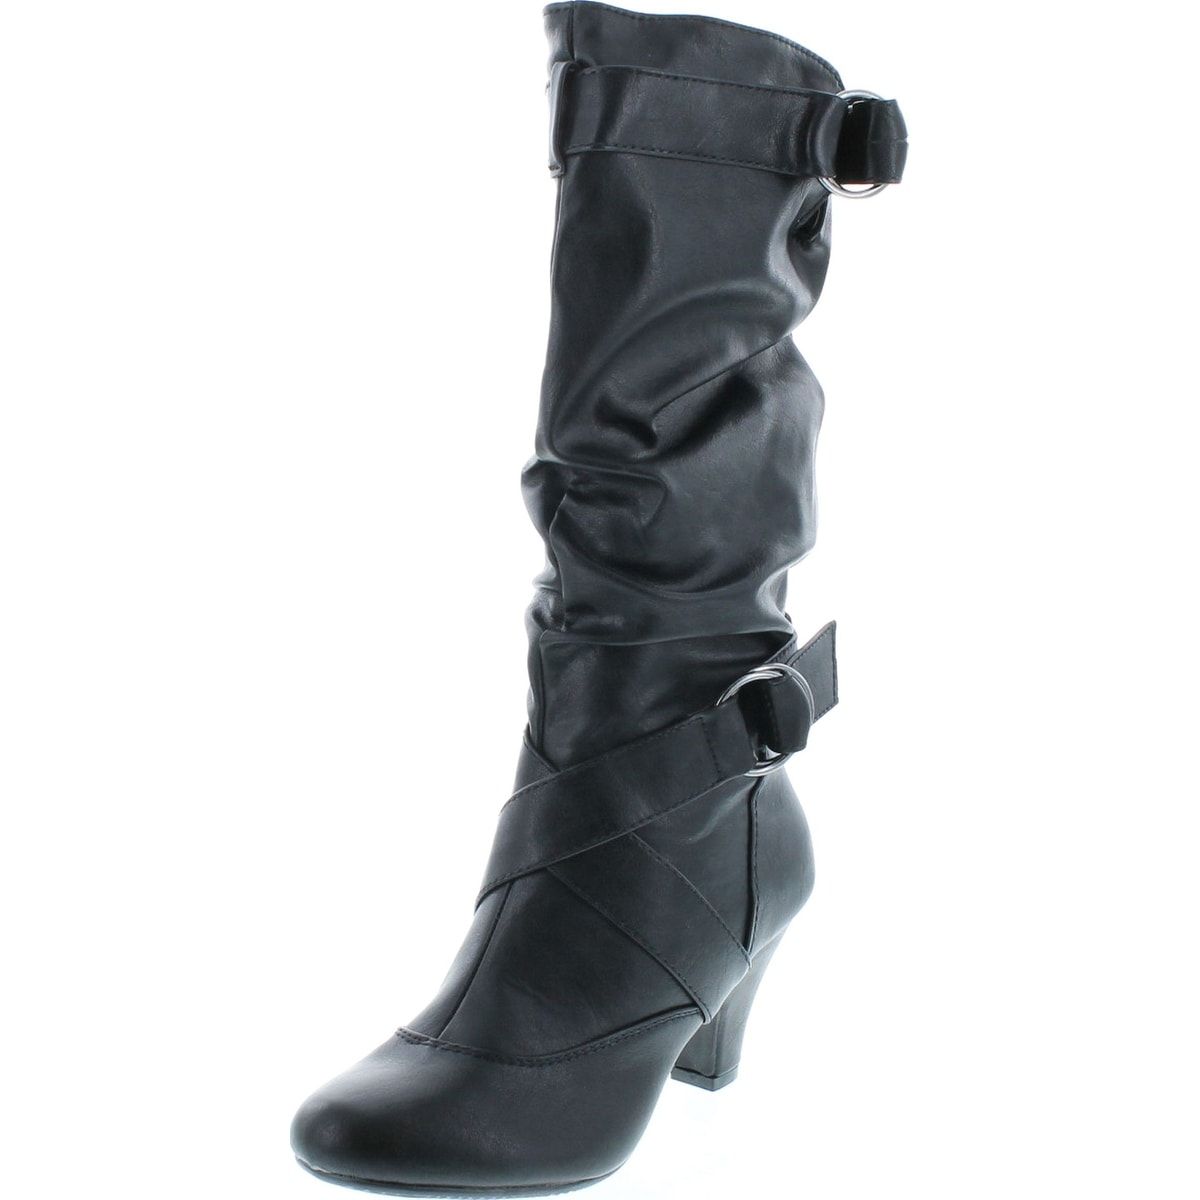 black mid calf boots heels